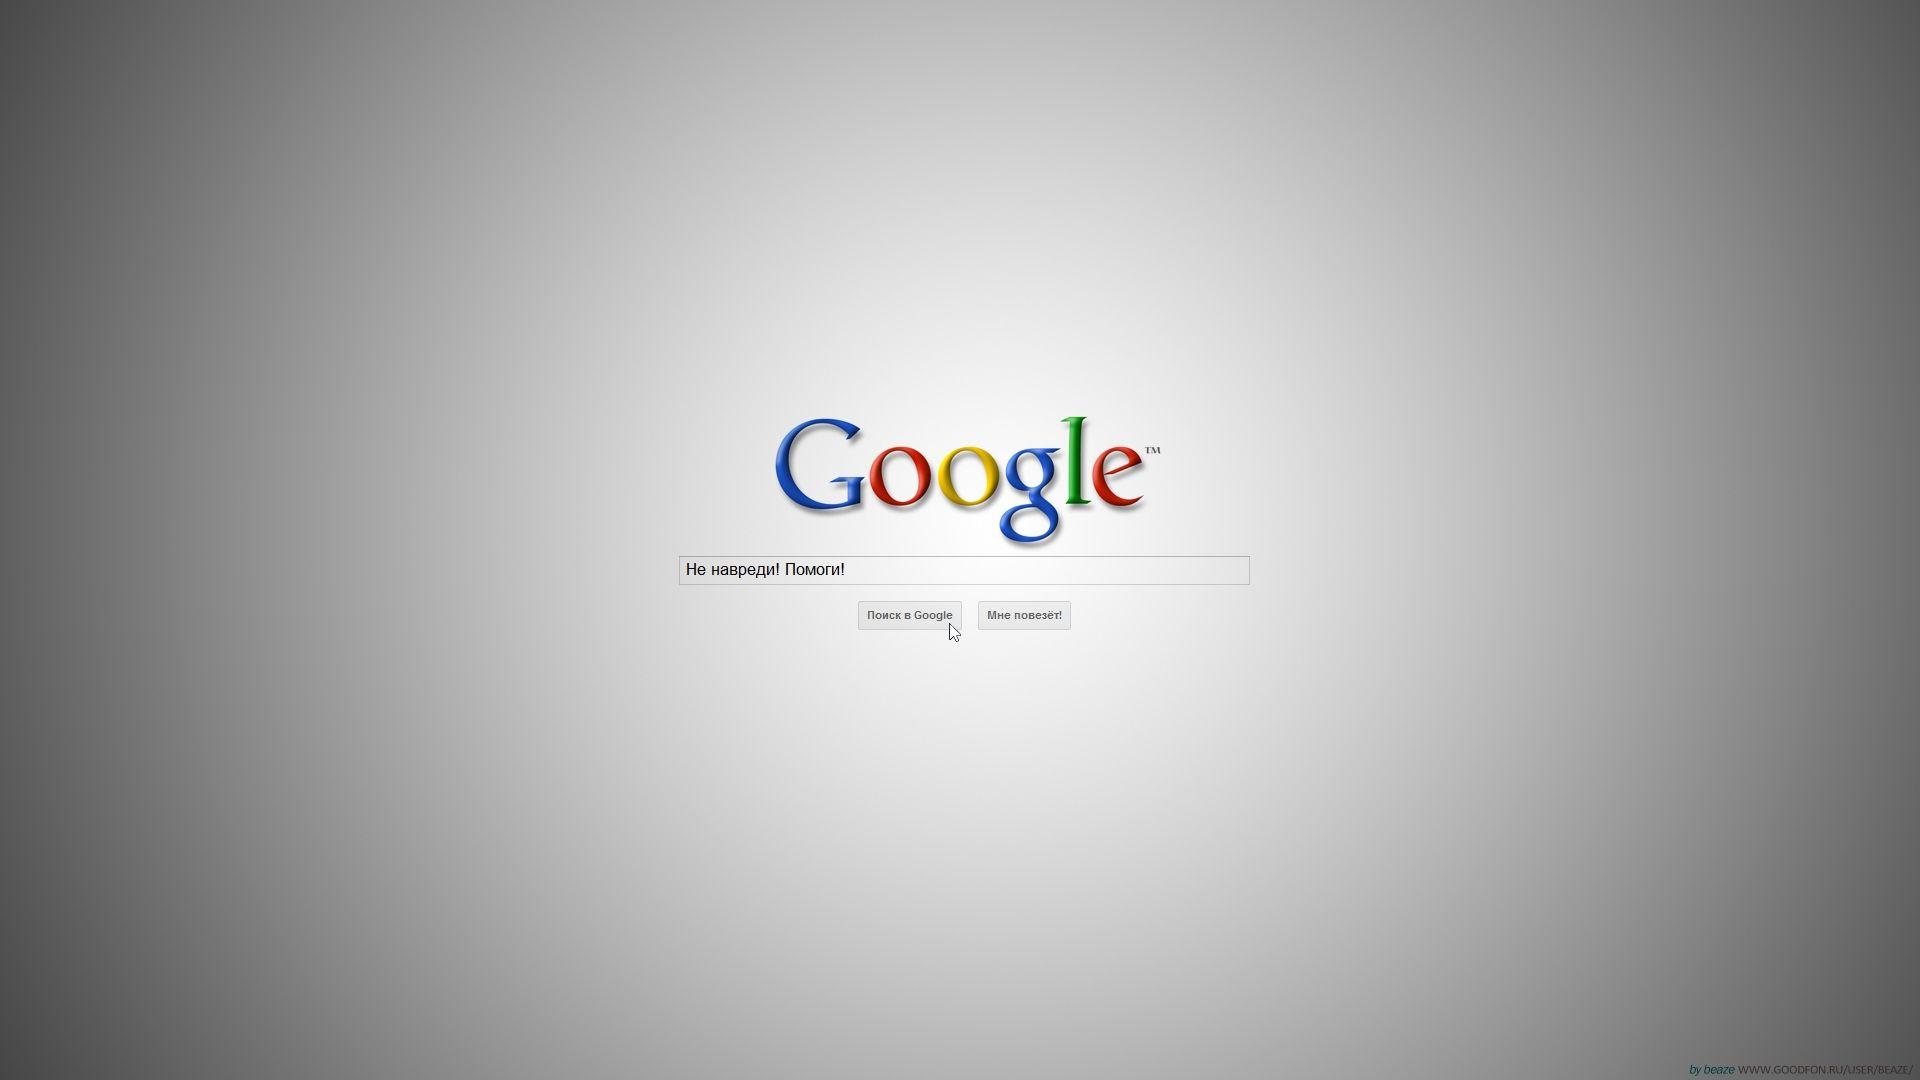 Google Search Console Wallpaper Wallpaper